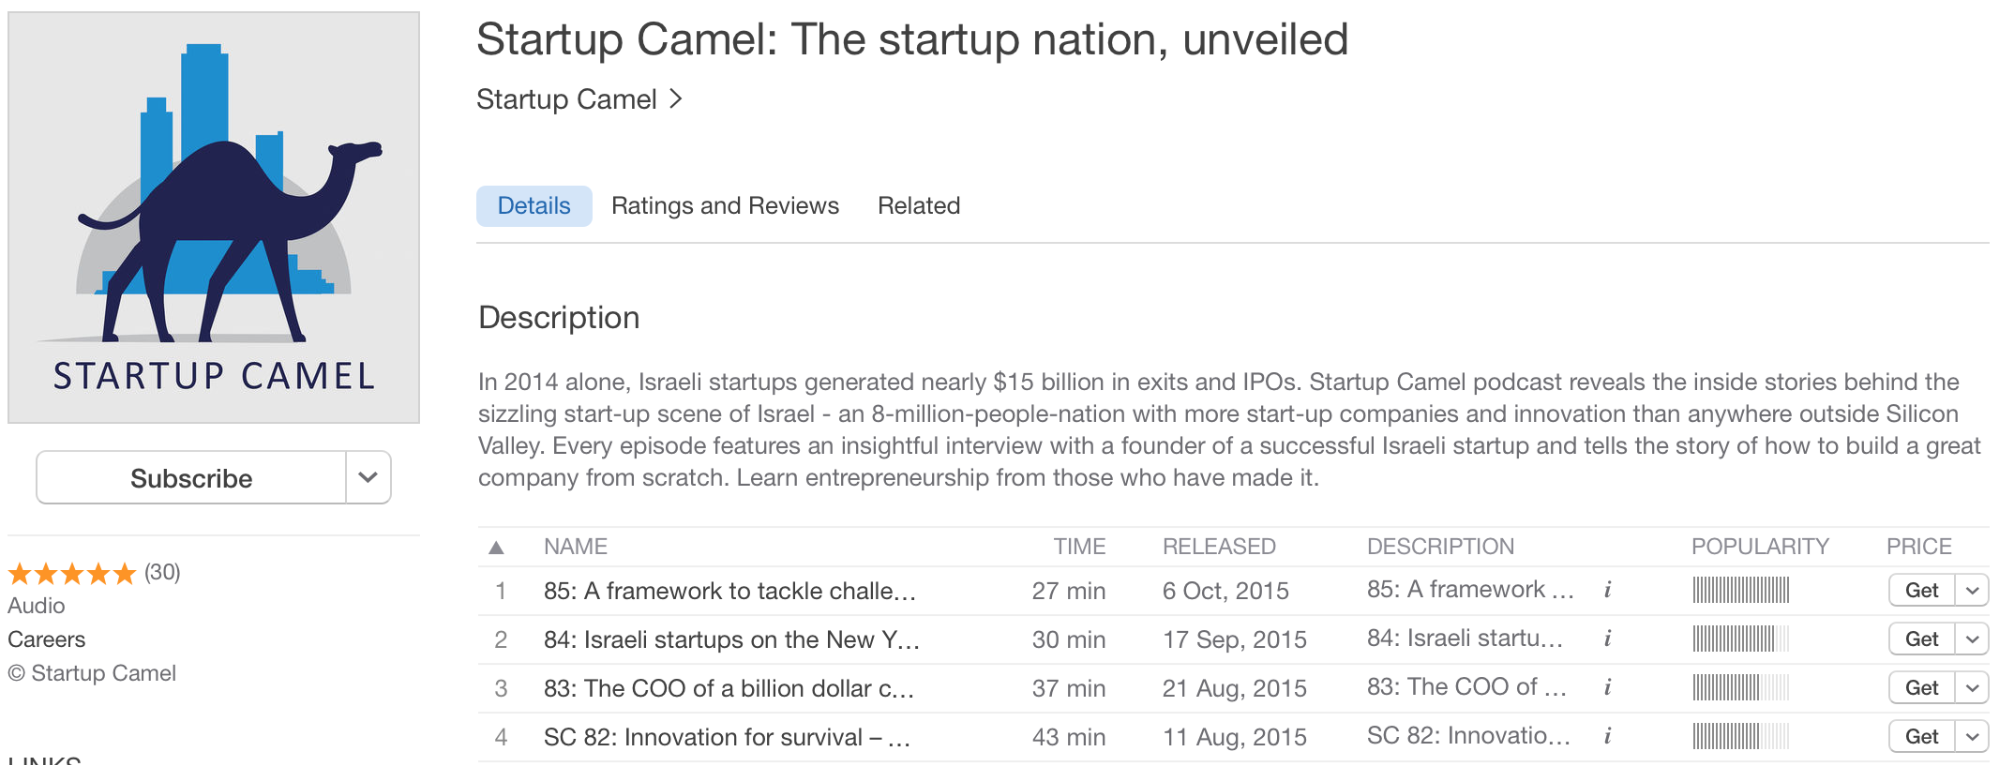 Startup Camel